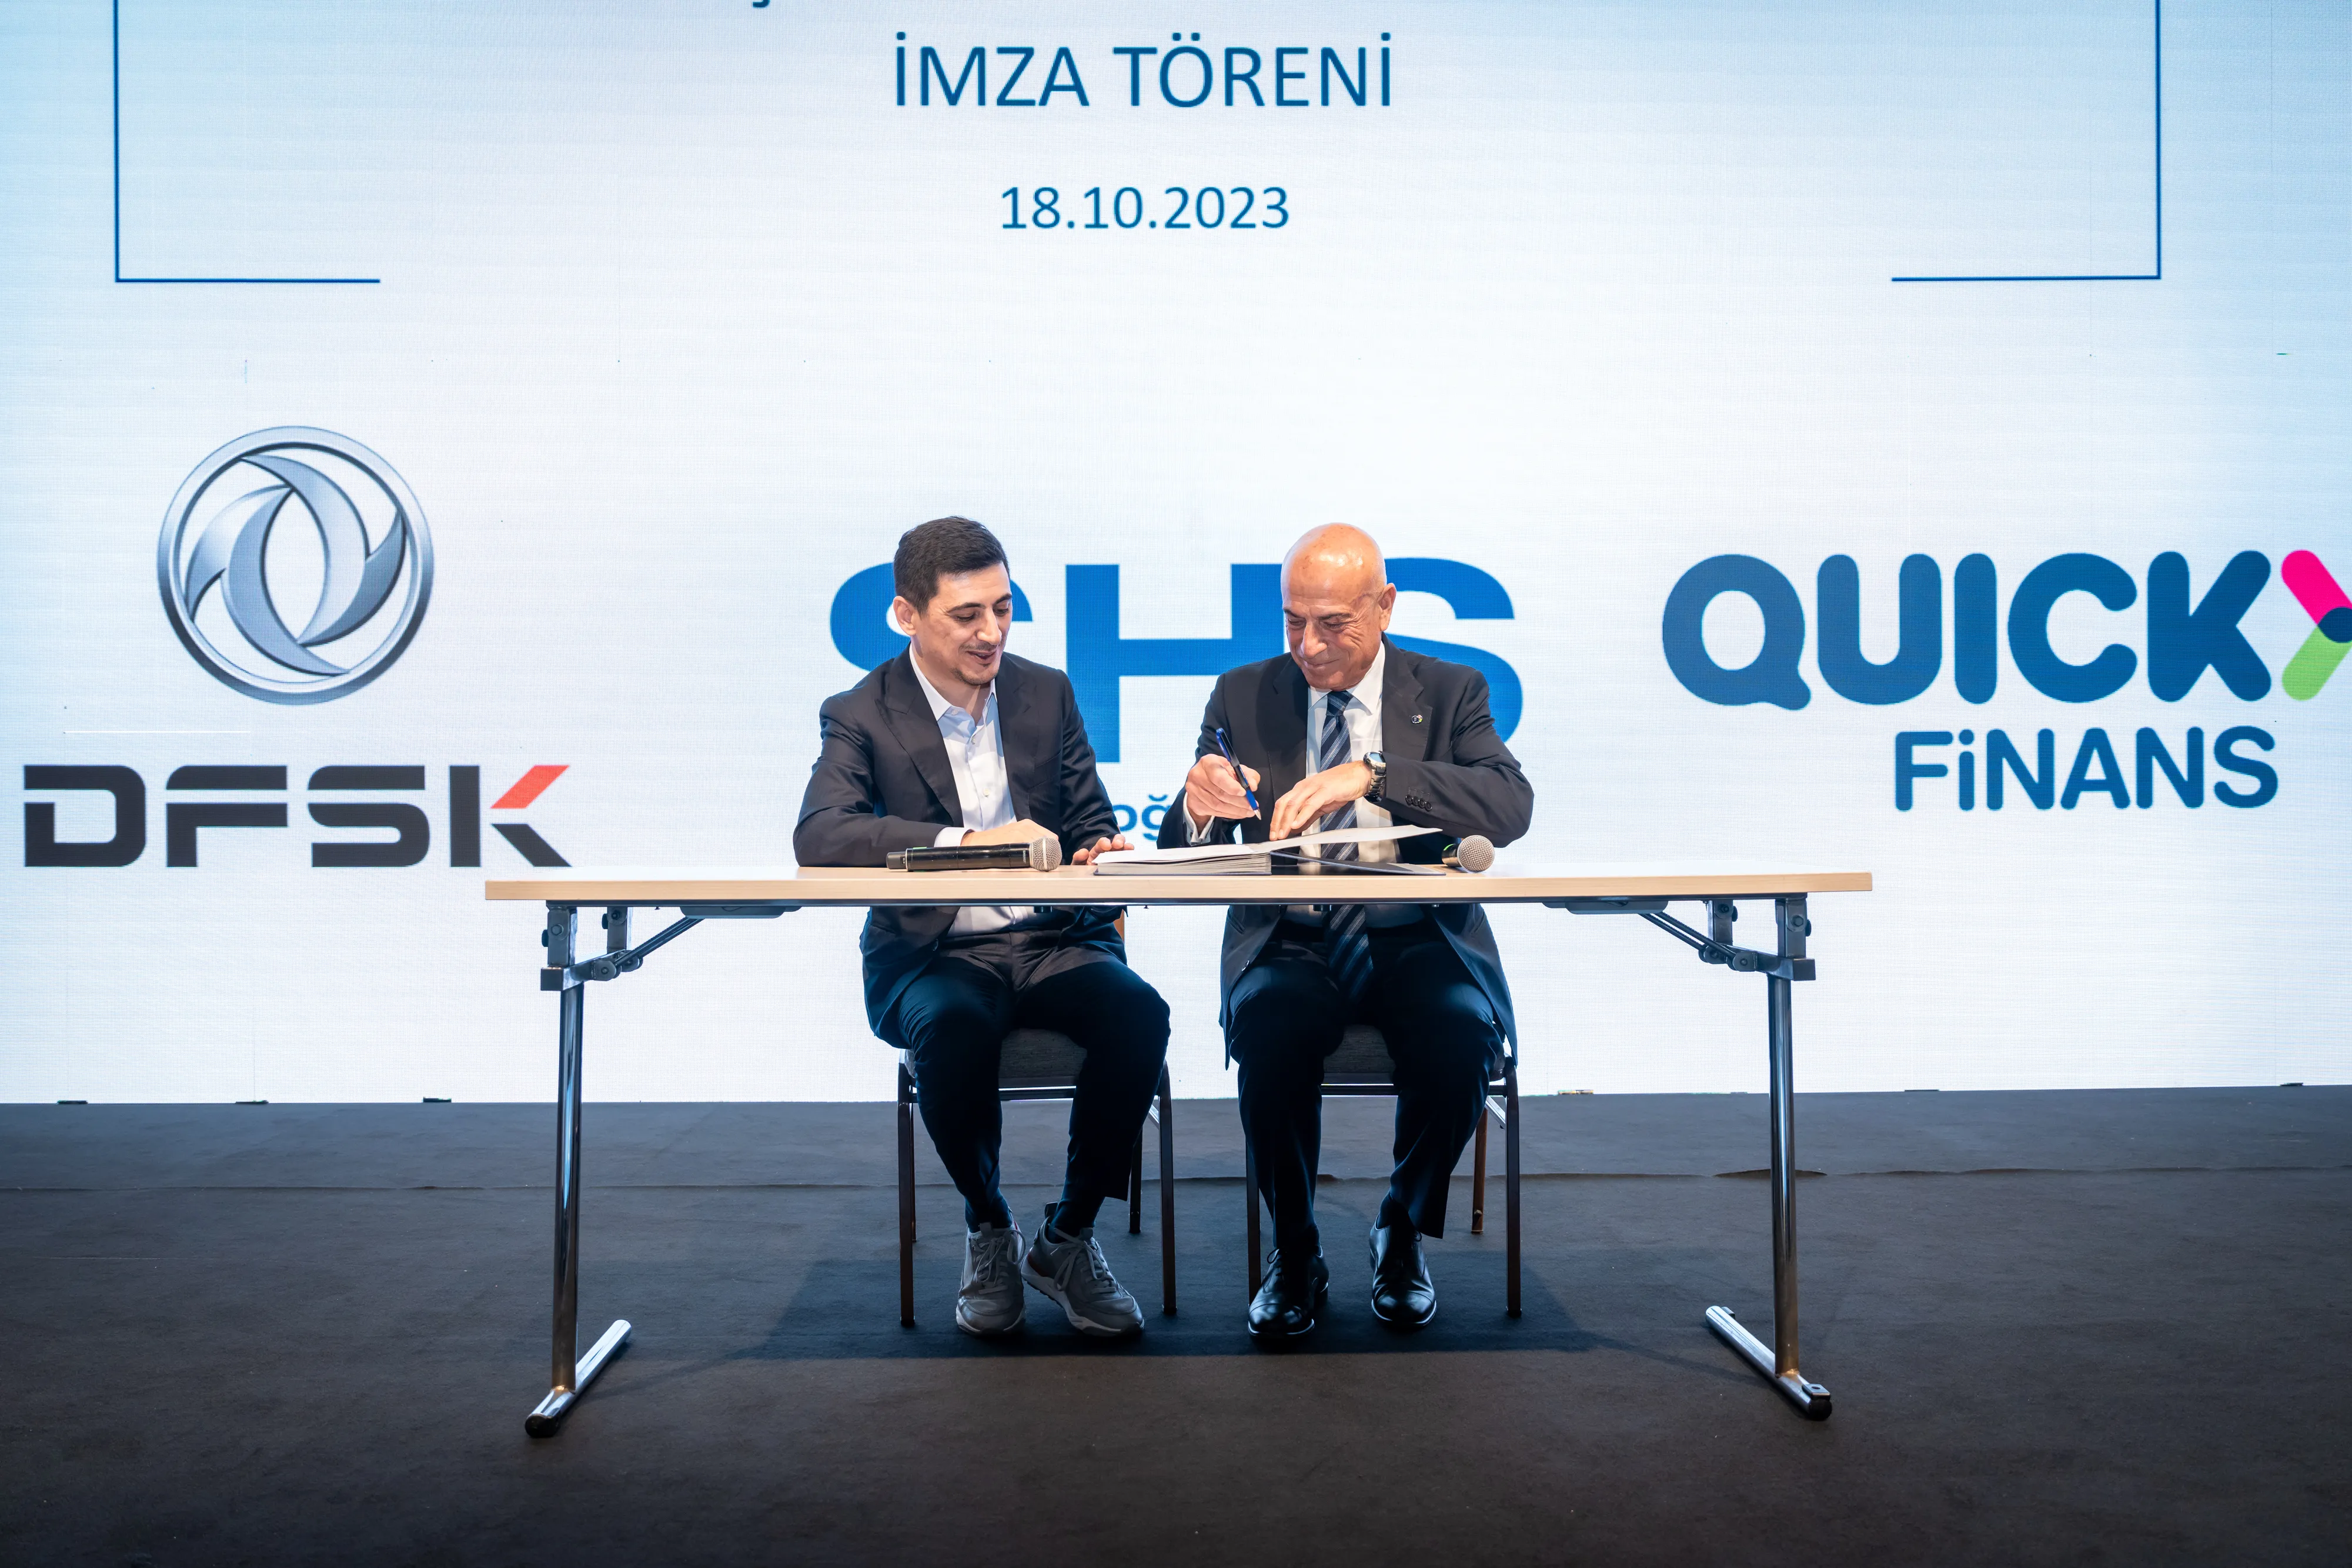 Quick Finans Genel Müdürü Nihat Karadağ ve Borusan Araç İhale Genel Müdürü İlker Baydar imza töreninde